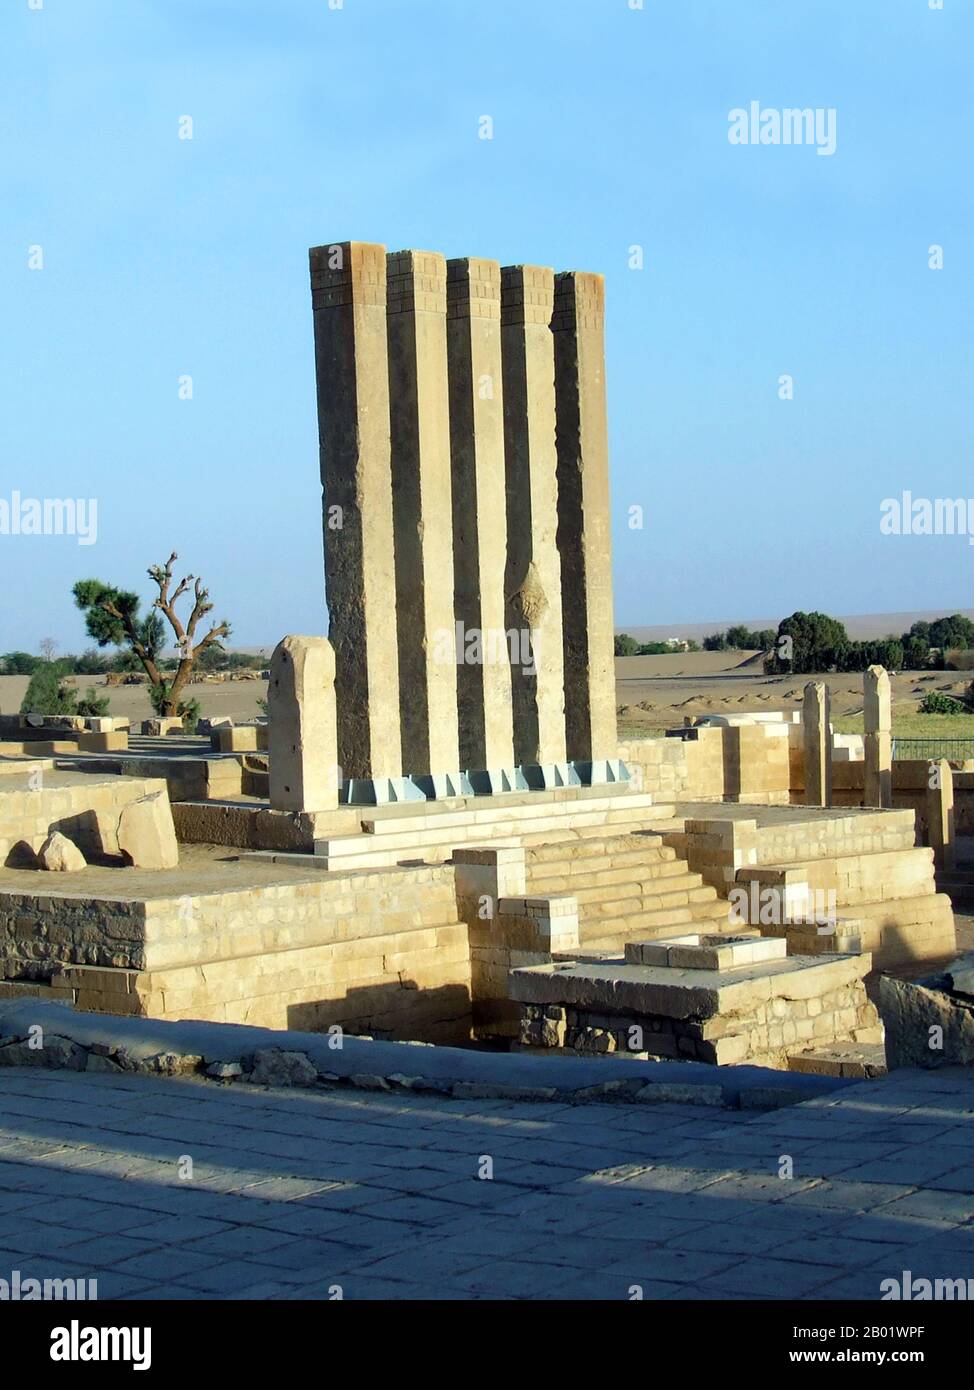 Jemen: Der Tempel von Awwam (Mahram Bilqis), der dem Mondgott Almaqah in Ma'rib, der ehemaligen Hauptstadt des Sabäischen Königreichs, um das 7. Bis 5. Jahrhundert v. Chr. gewidmet ist. MA'rib oder Marib ist die Hauptstadt des Gouvernements Ma'rib im Jemen und war die Hauptstadt des sabäischen Königreichs, von dem einige Gelehrte glauben, dass es sich um die alte Saba von biblischem Ruhm handelt. Es liegt etwa 120 Kilometer östlich von Jemens moderner Hauptstadt Sanaa Stockfoto